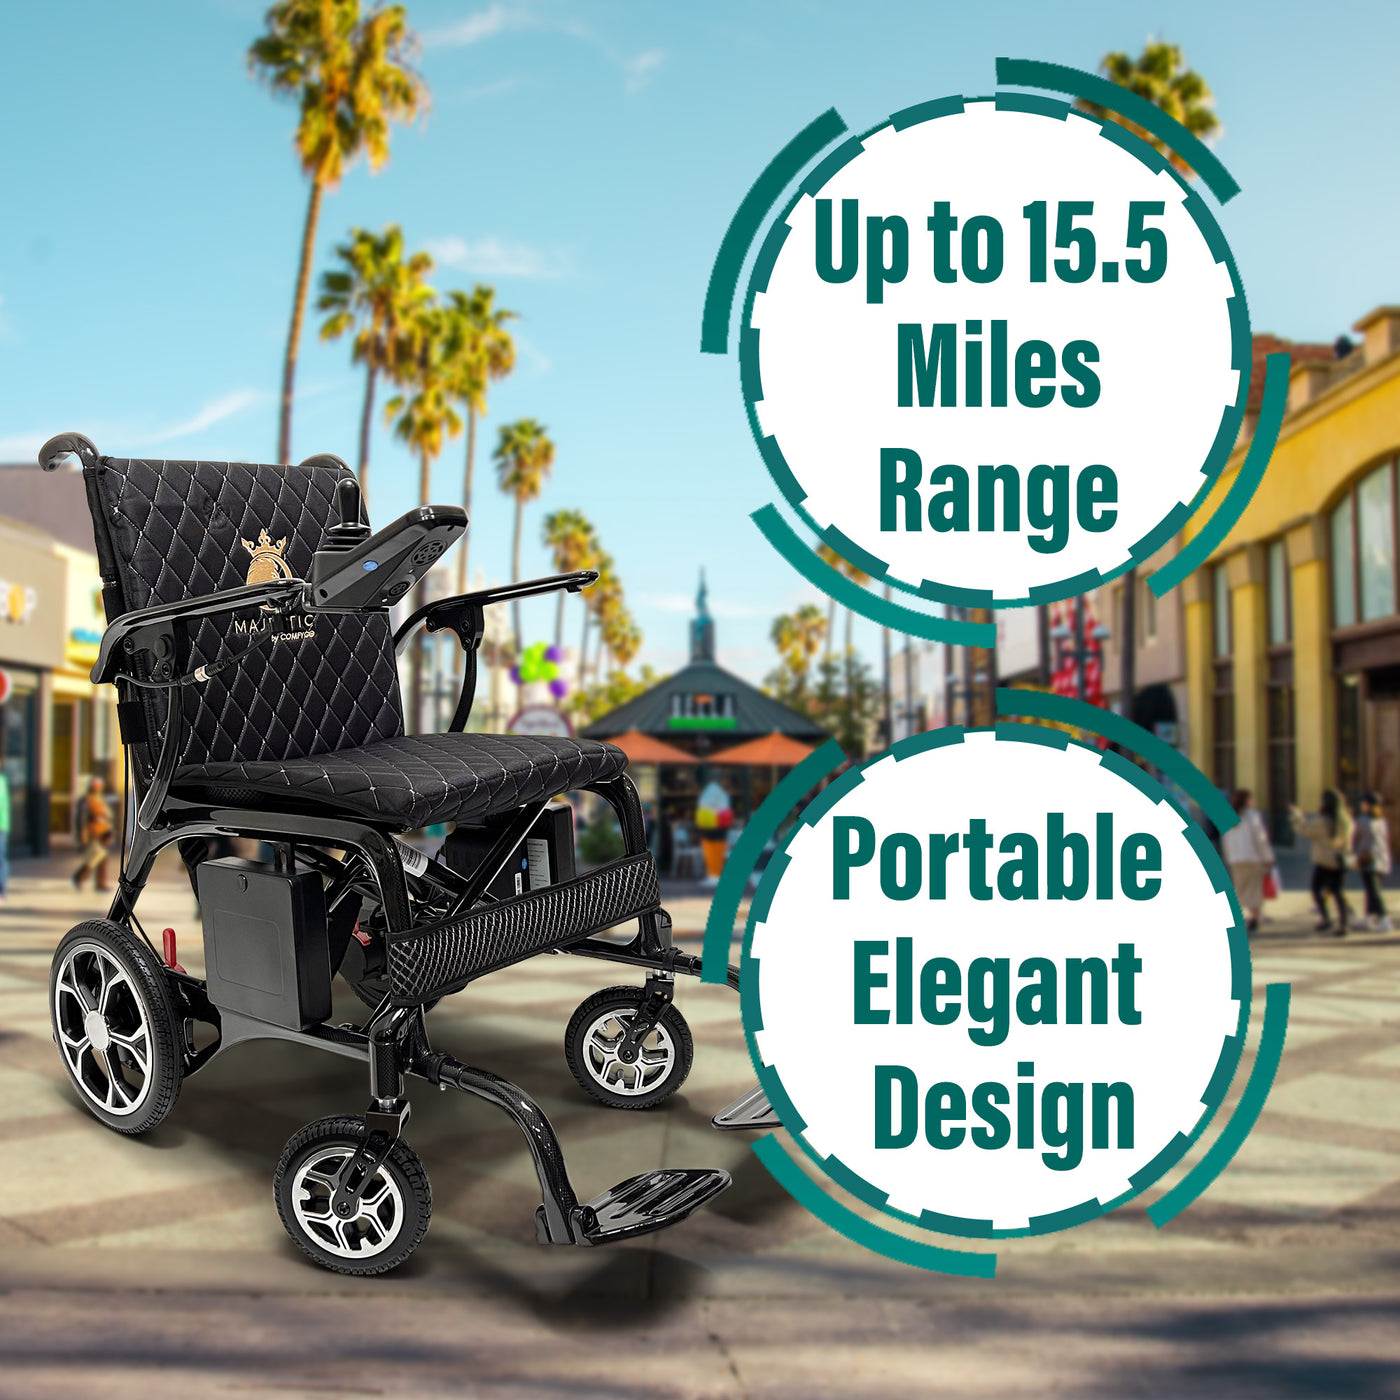 Electric Wheelchair - Ultra Lightweight 26 lbs, Carbon Fiber Frame